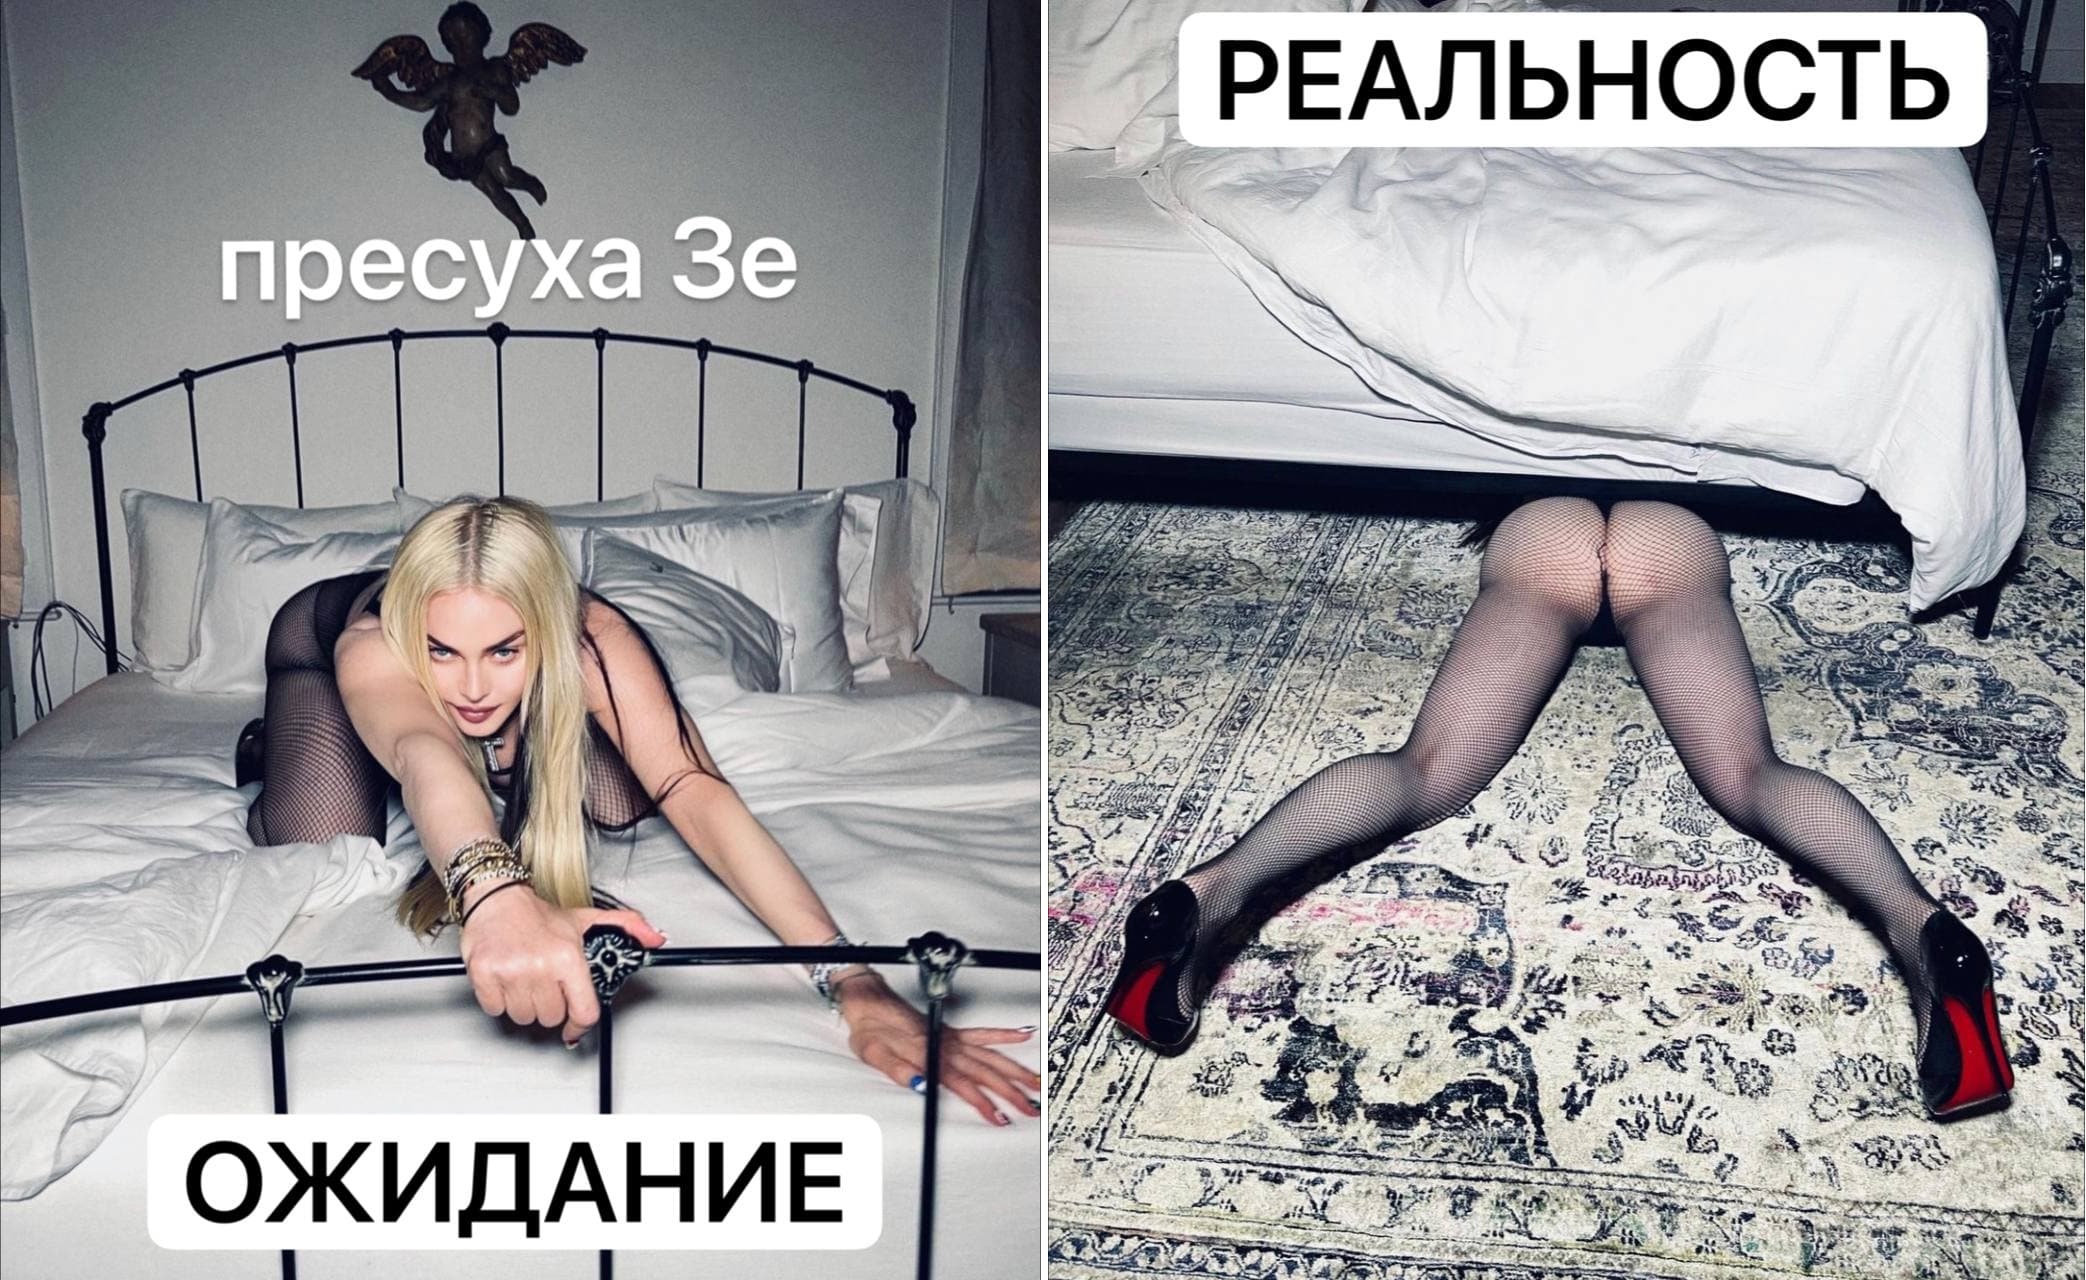 Как в соцсетях высмеяли пресс-марафон Зеленского: подборка лучших мемов - 14 - изображение